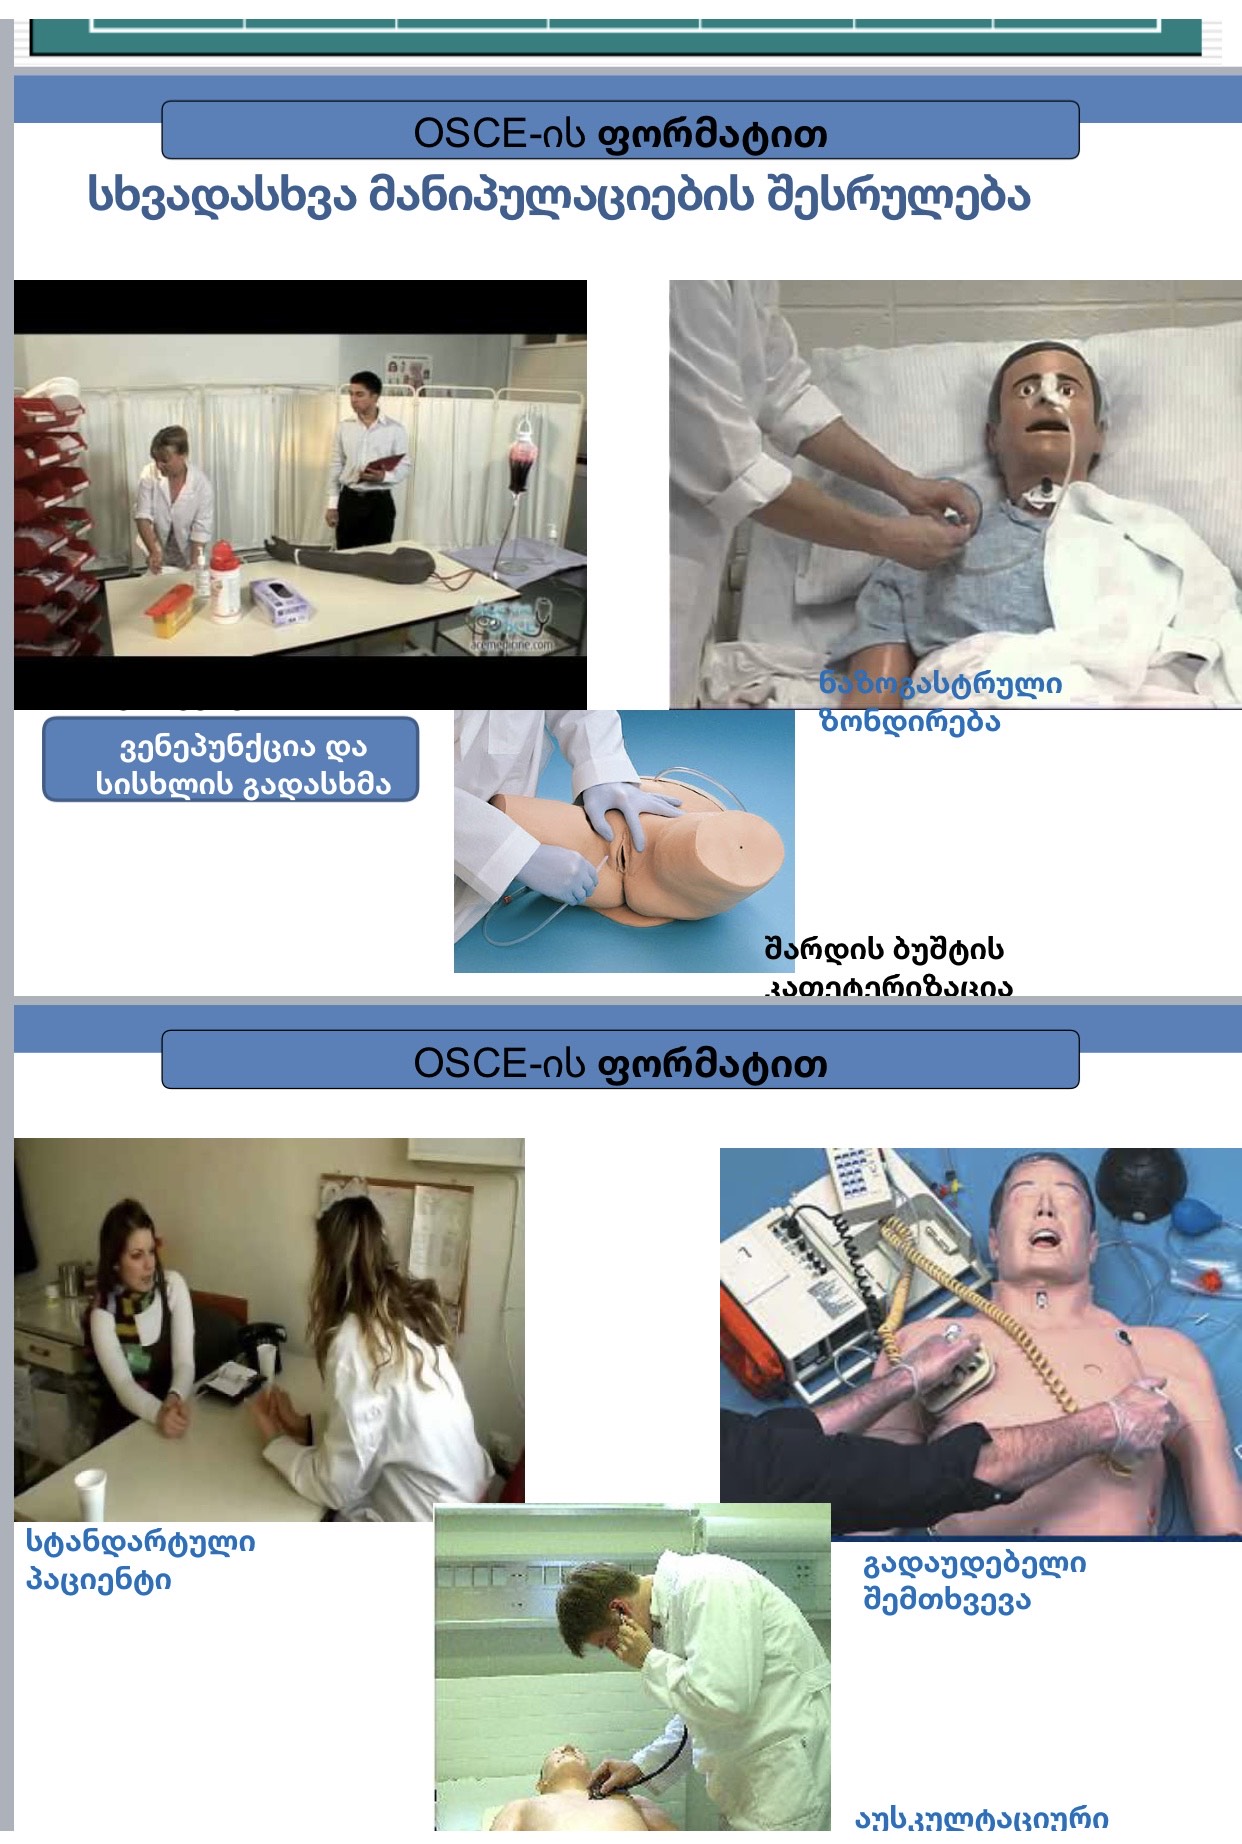 ჯანდაცვის ფაკულტეტის აკადემიური პერსონალის გადამზადება სწავლის შეფასების თანამედროვე მეთოდებში  - OSCE - ობიექტურად სტრუქტურირებული კლინიკური გამოცდა